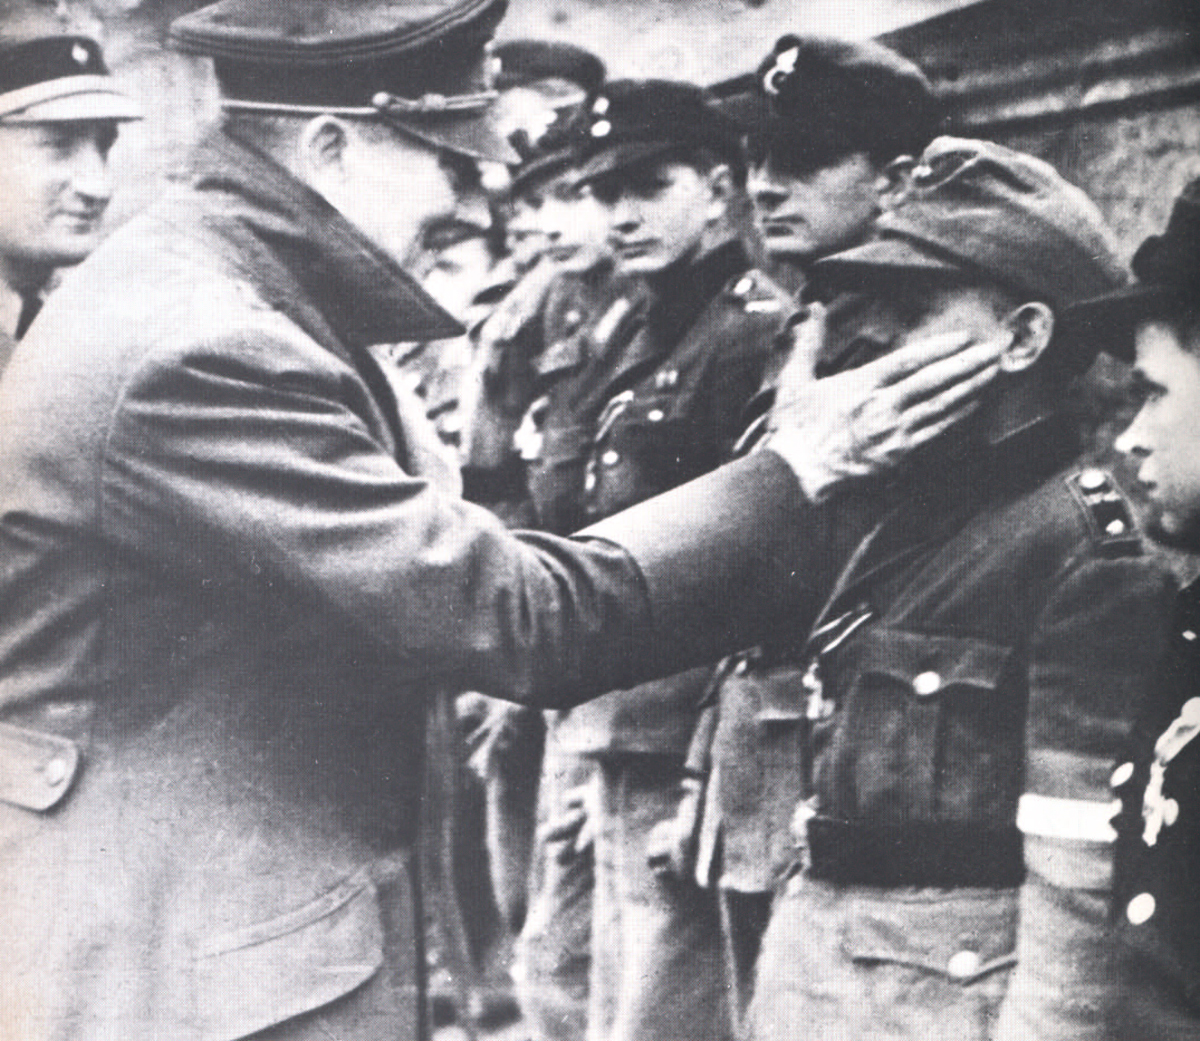 ltima foto de Adolf Hitler no dia de seu aniversrio, 20 de abril de 1945, entrega aos jovens membros da defesa de Berlim da medalha cruz de prata por bravura<a style='float:right;color:#ccc' href='https://www3.al.sp.gov.br/repositorio/noticia/03-2008/Hitler.jpg' target=_blank><i class='bi bi-zoom-in'></i> Clique para ver a imagem </a>